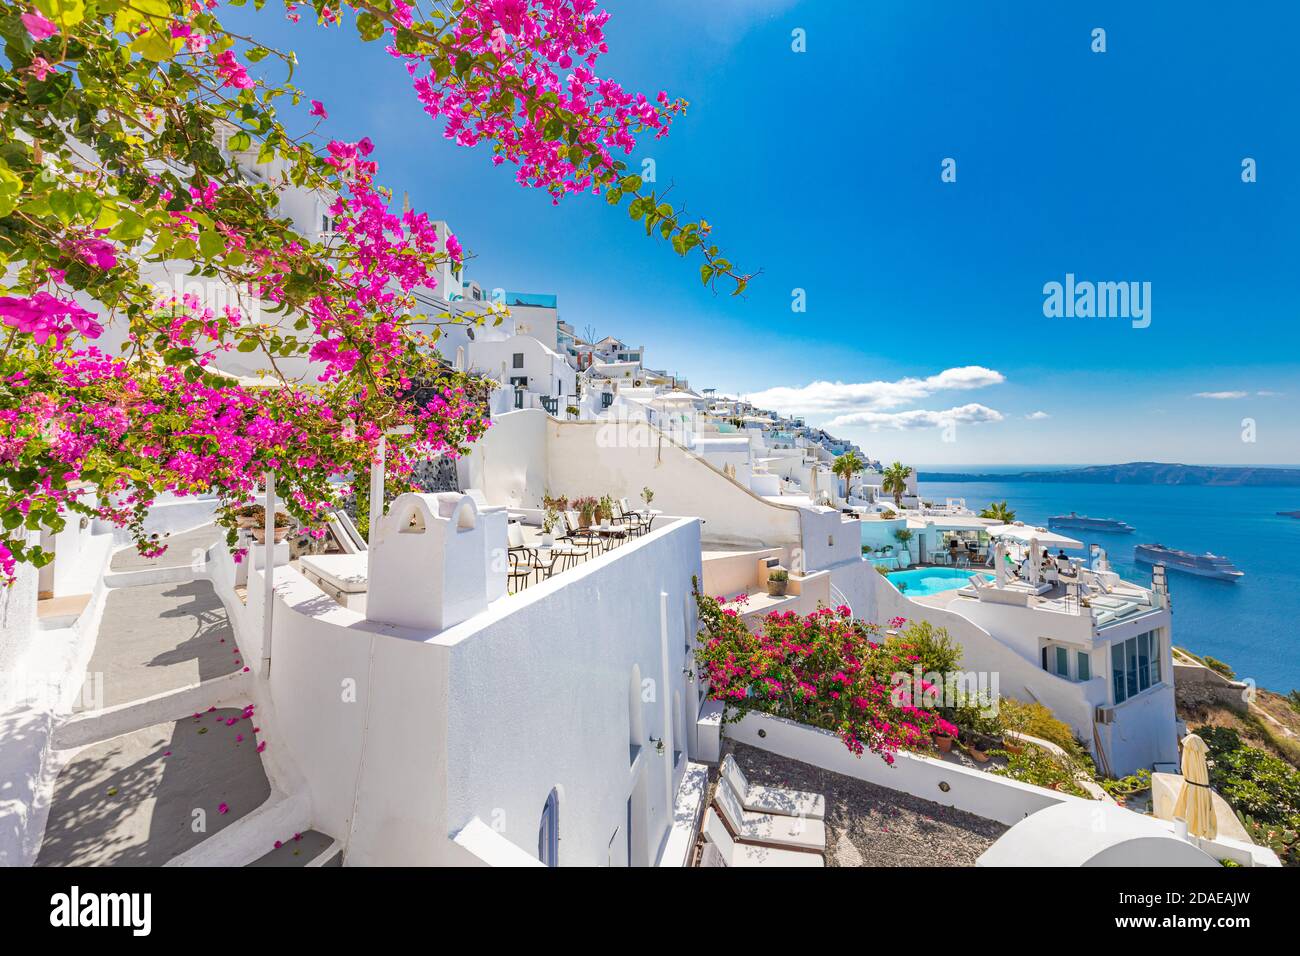 Les maisons bleues blanches traditionnelles célèbres fleurissent par temps ensoleillé au-dessus de la caldeira, mer Égée. Magnifique paysage d'été, vue sur la mer, voyage de luxe Banque D'Images